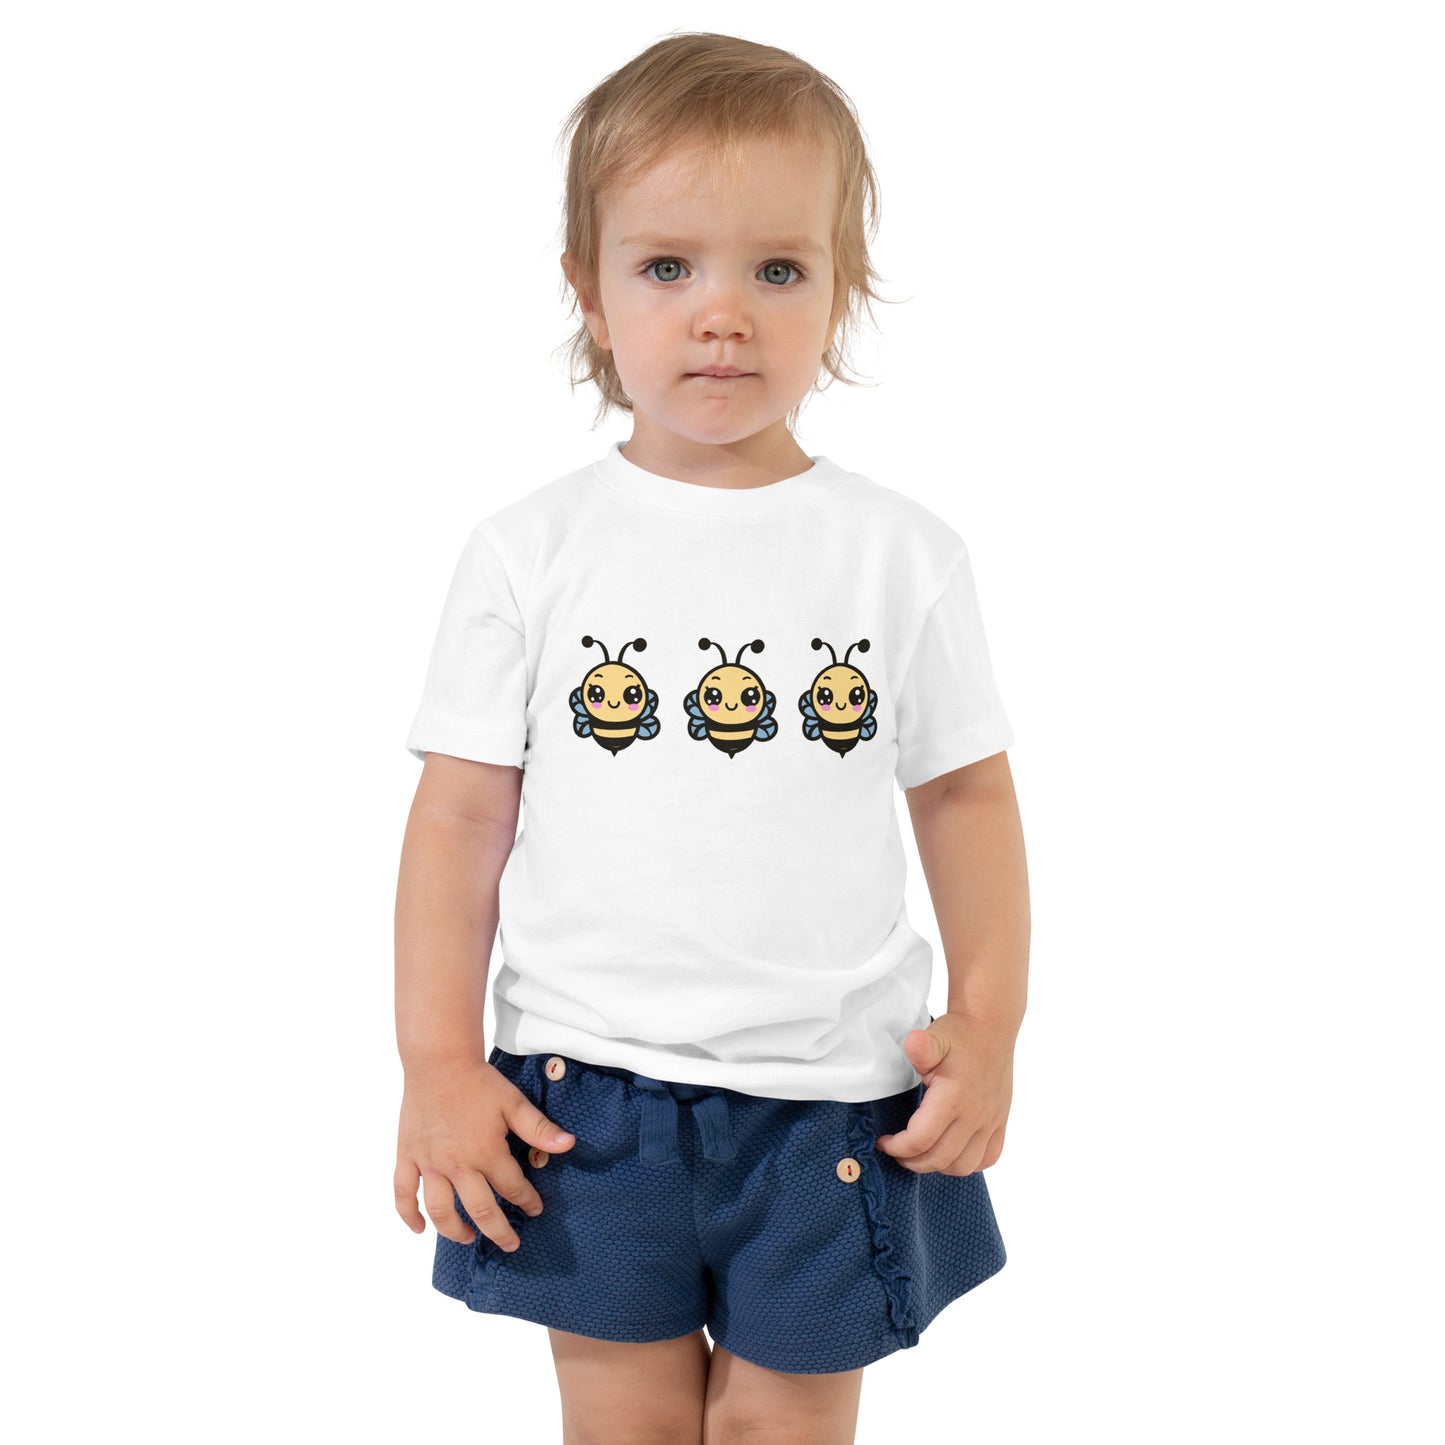 النحلة اللطيفة - قميص بأكمام قصيرة للأطفال